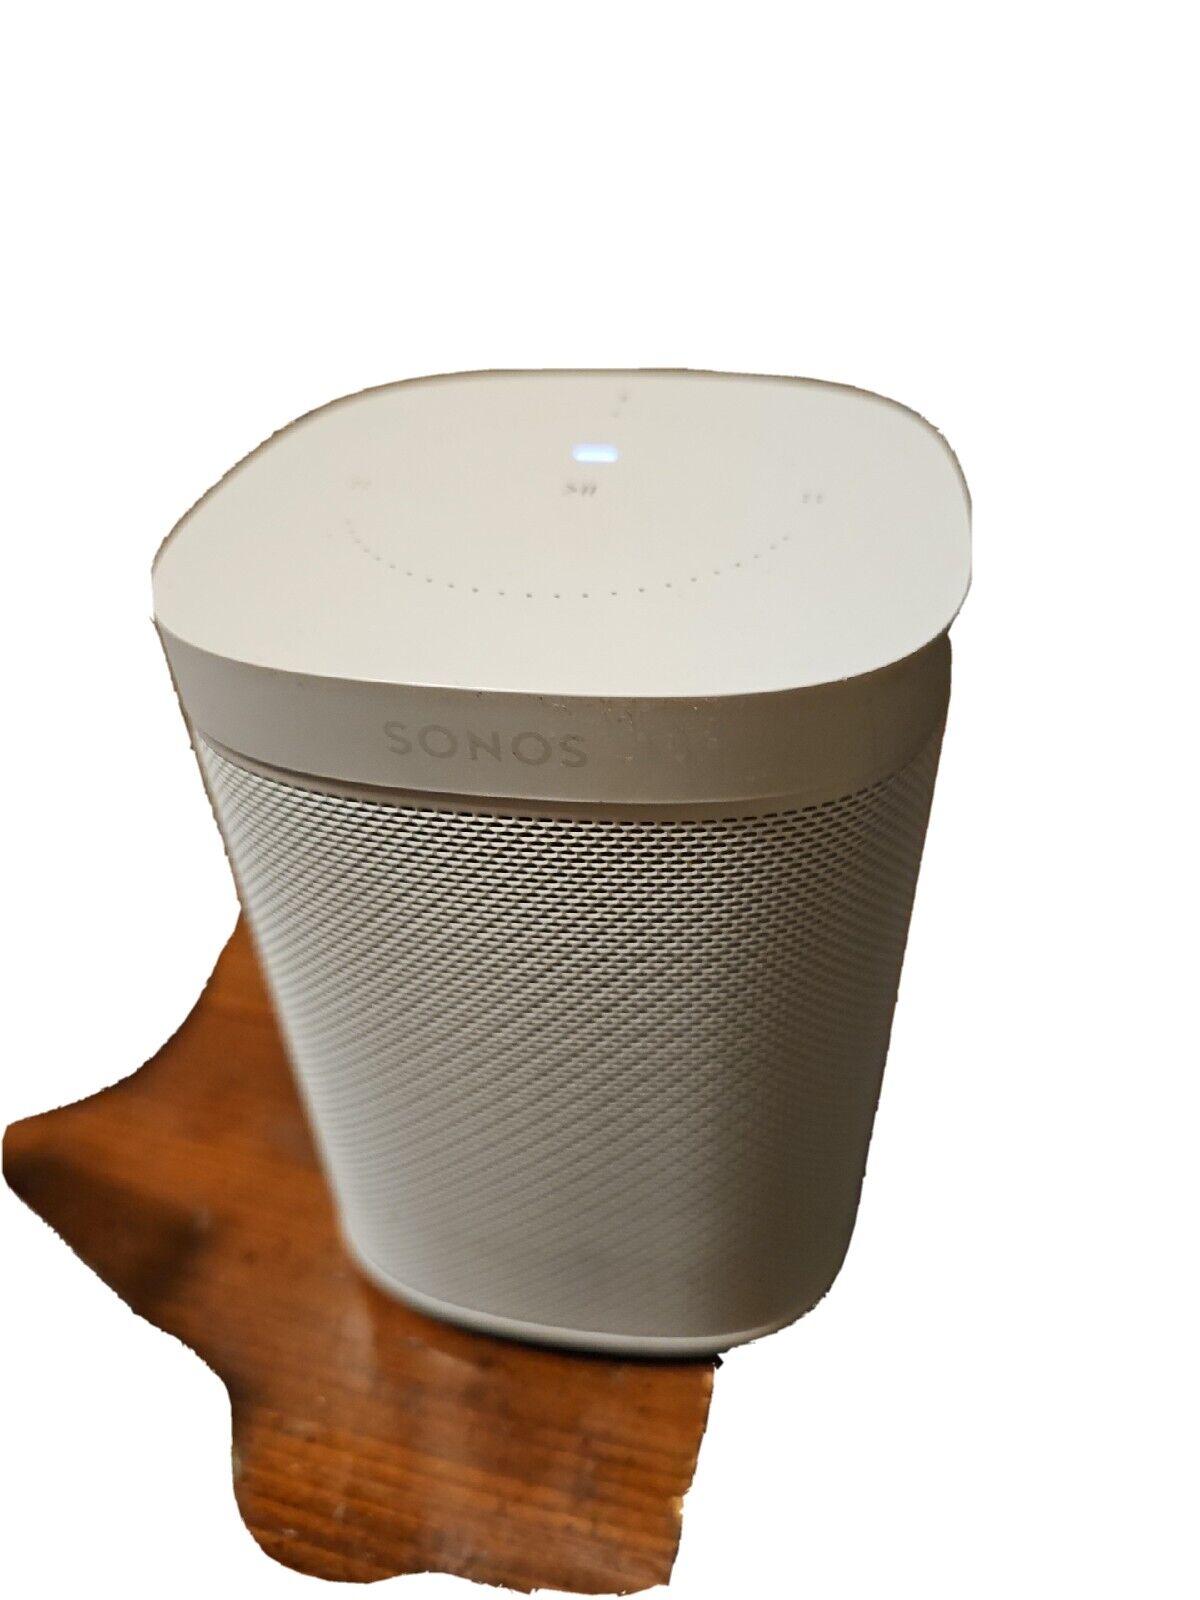 Sonos One Gen 2 Indoor Speaker - White for sale online | eBay